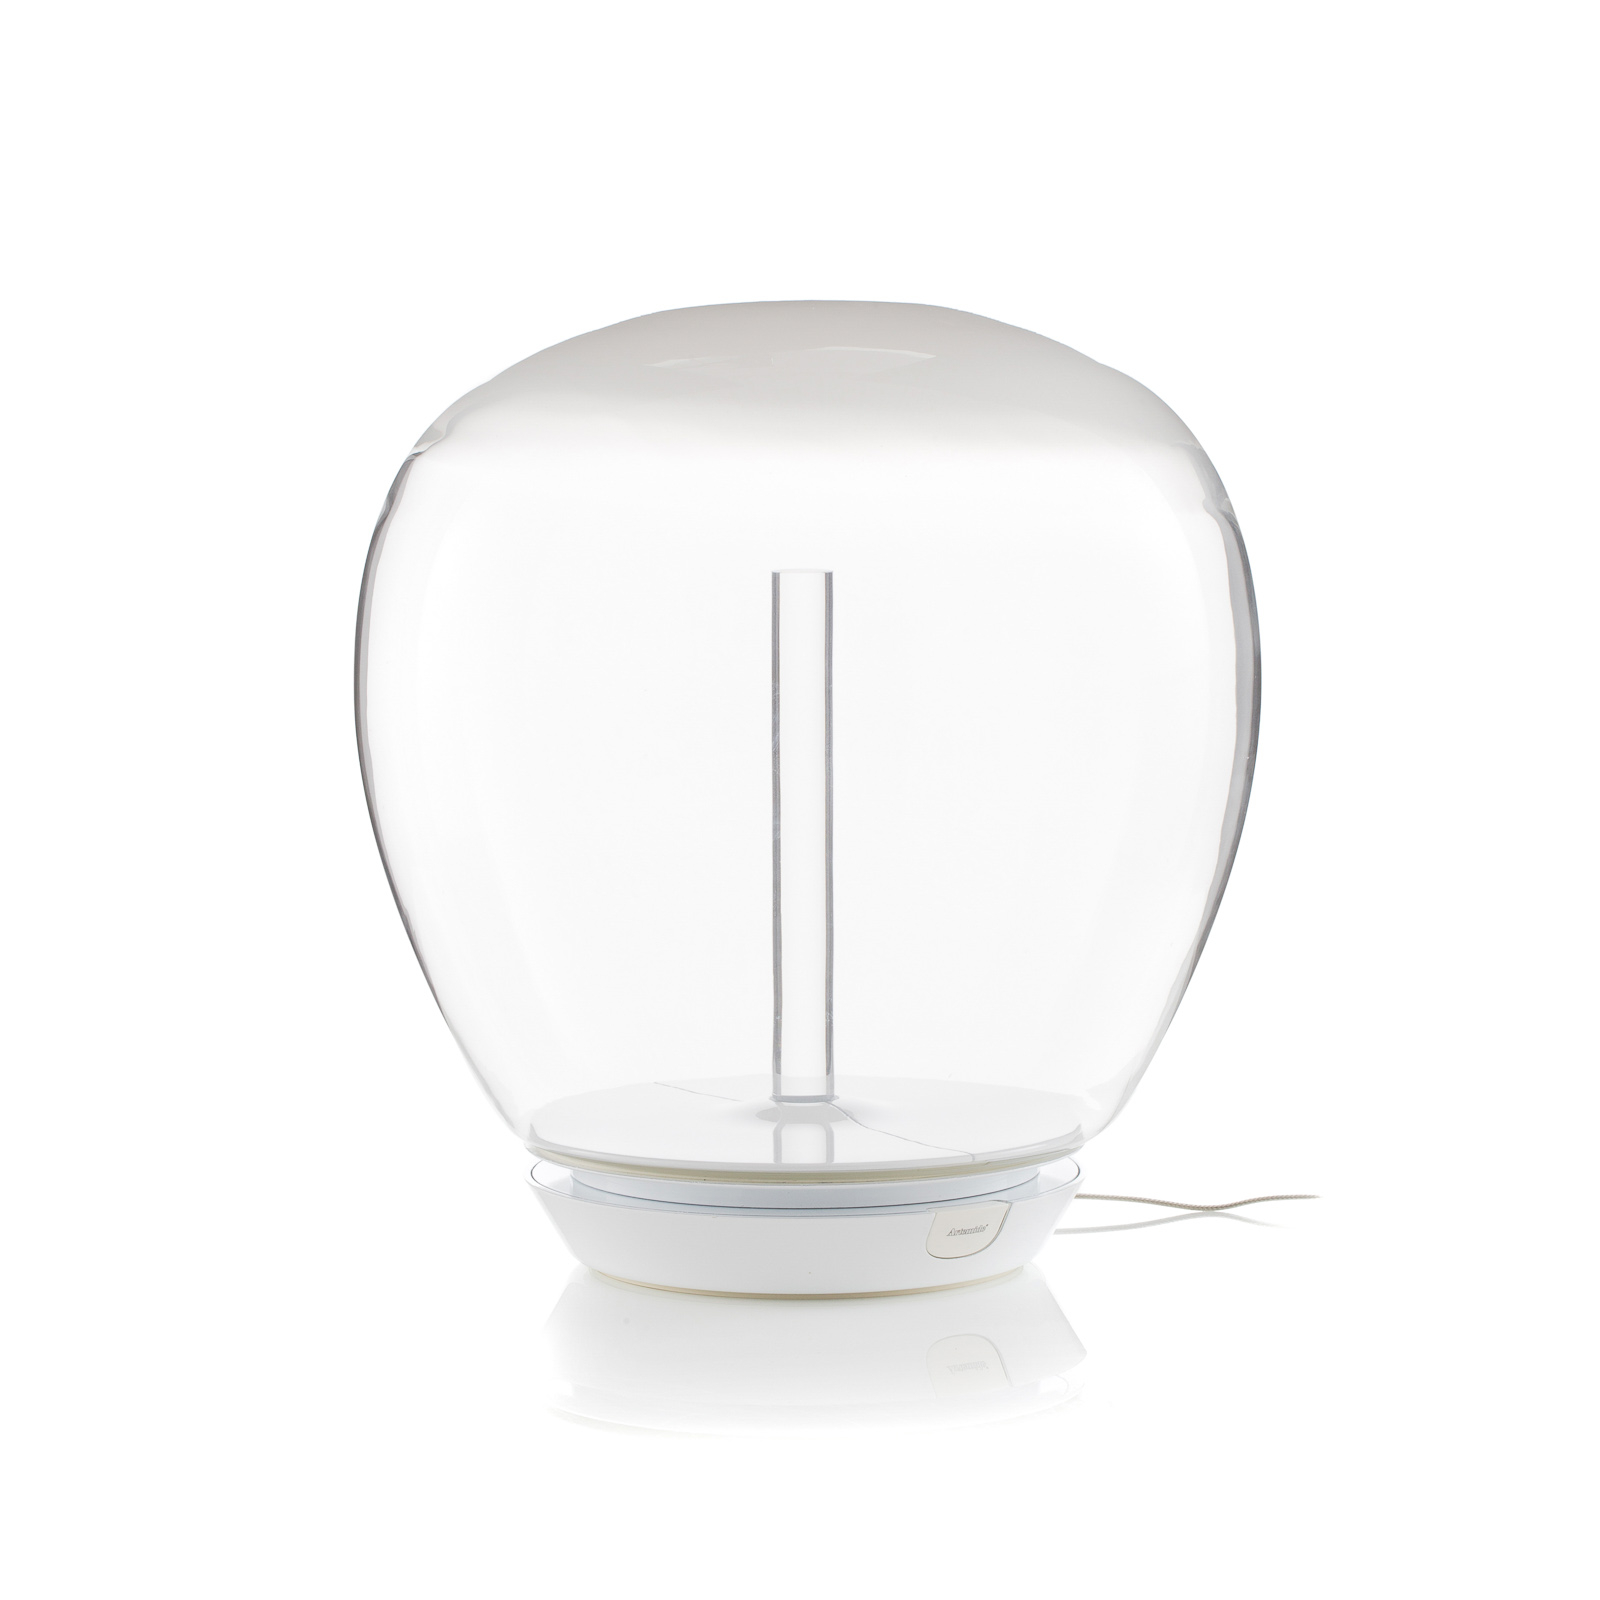 Artemide Empatia glasbordlampe med LED, Ø 36 cm